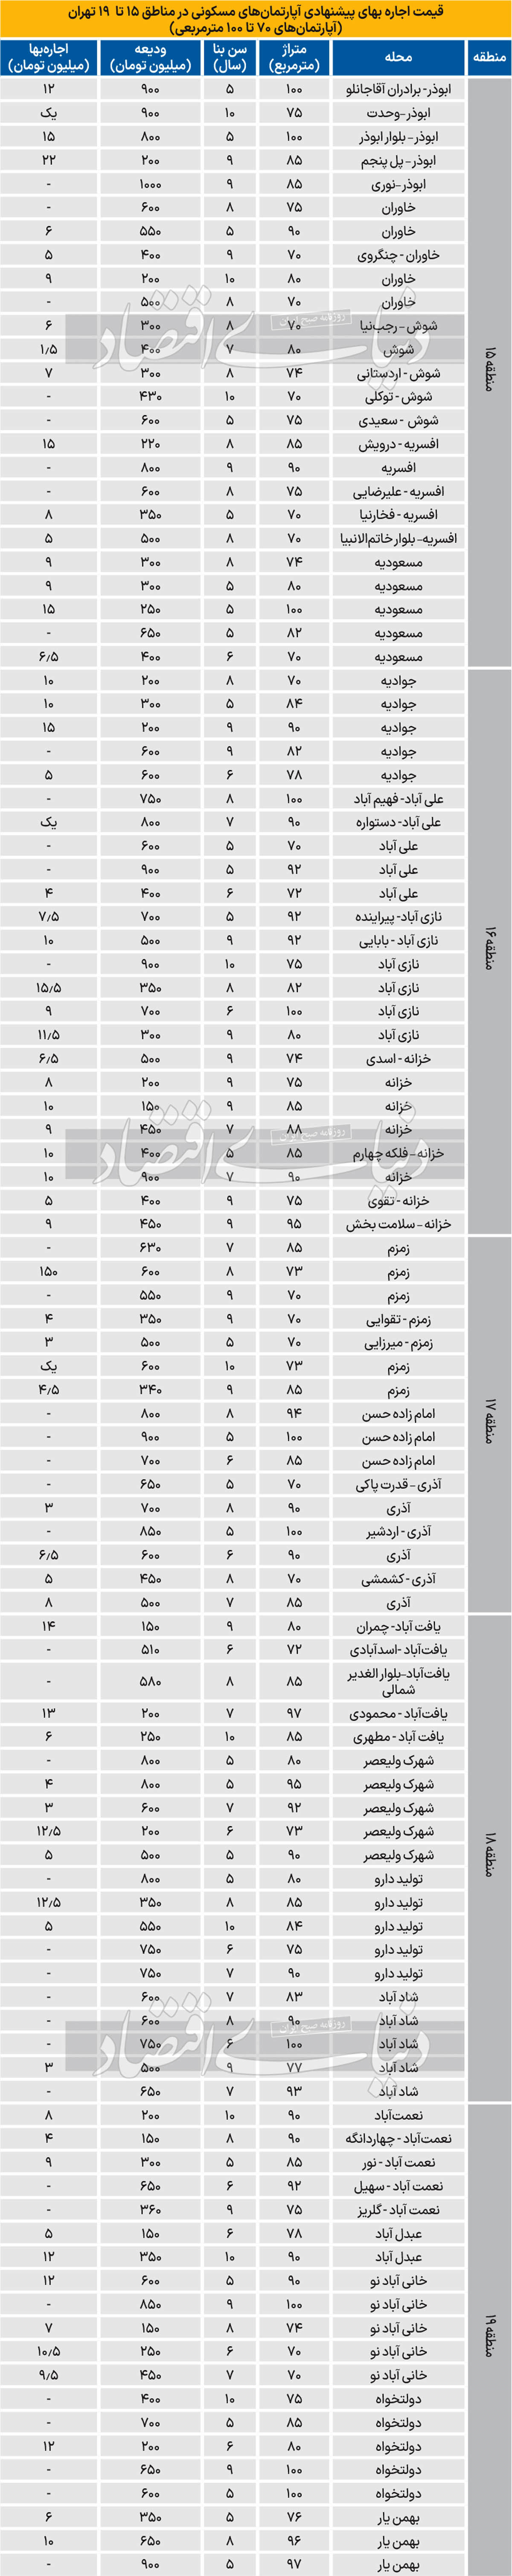 قیمت آپارتمان در جنوب تهران/ هزینه اجاره آپارتمان 70 تا 100 متری در جنوب تهران چند؟